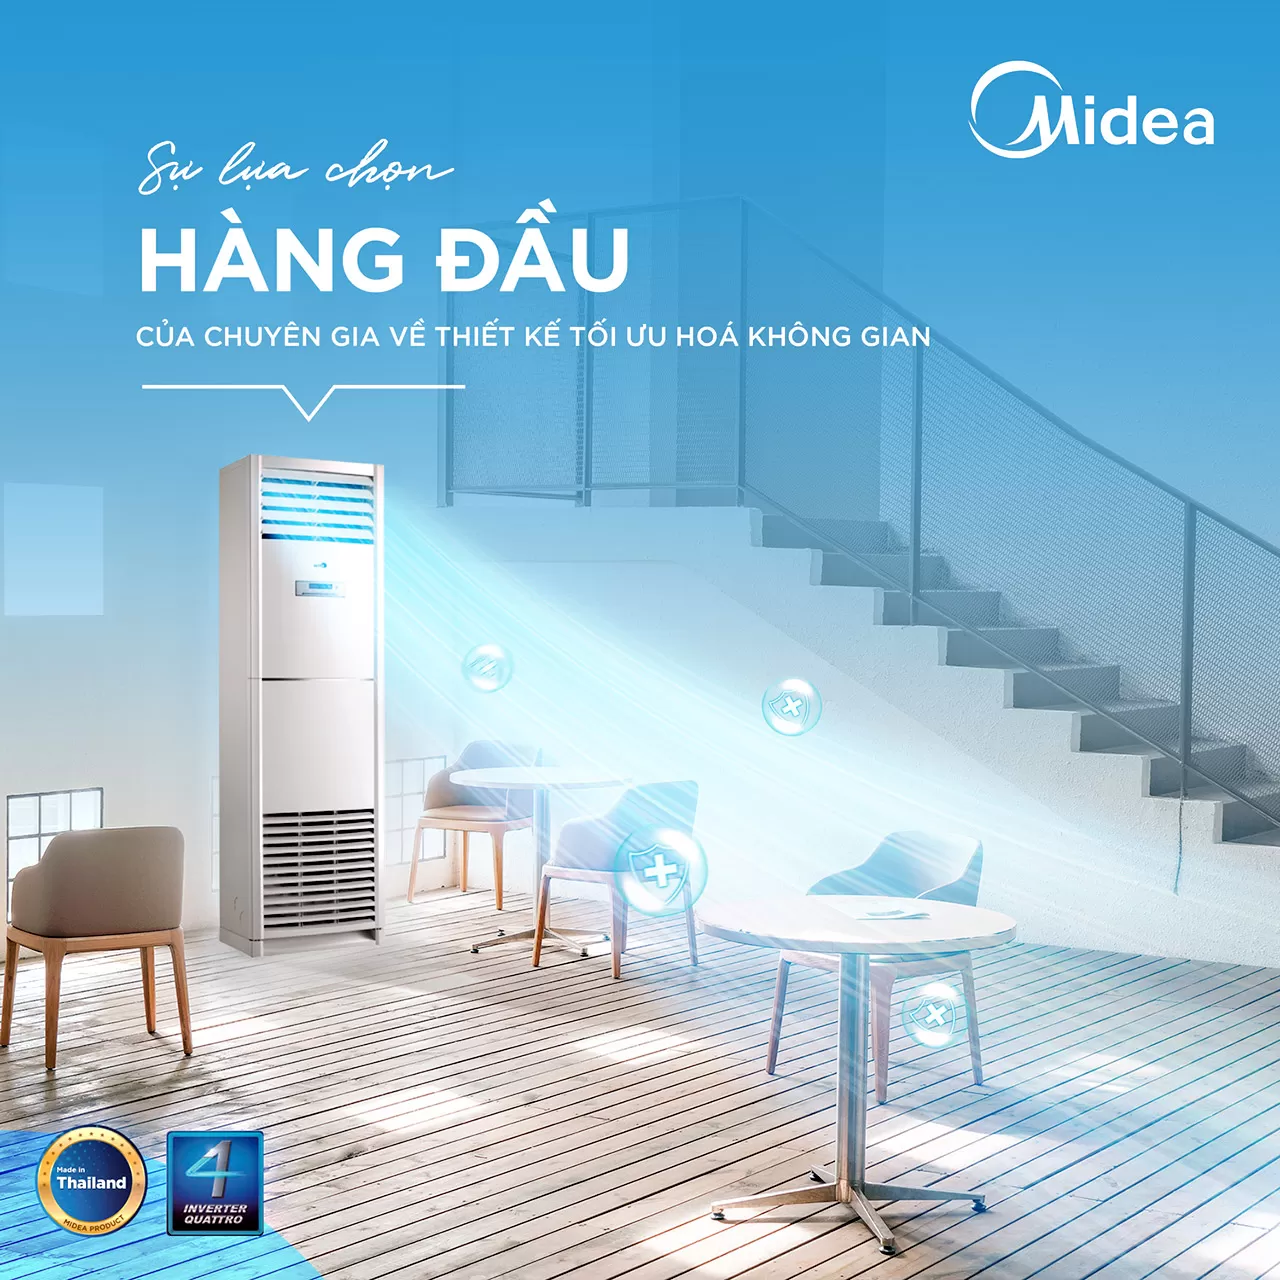 Máy lạnh tủ đứng Midea lựa chọn hàng đầu về thiết kế tối ưu không gian